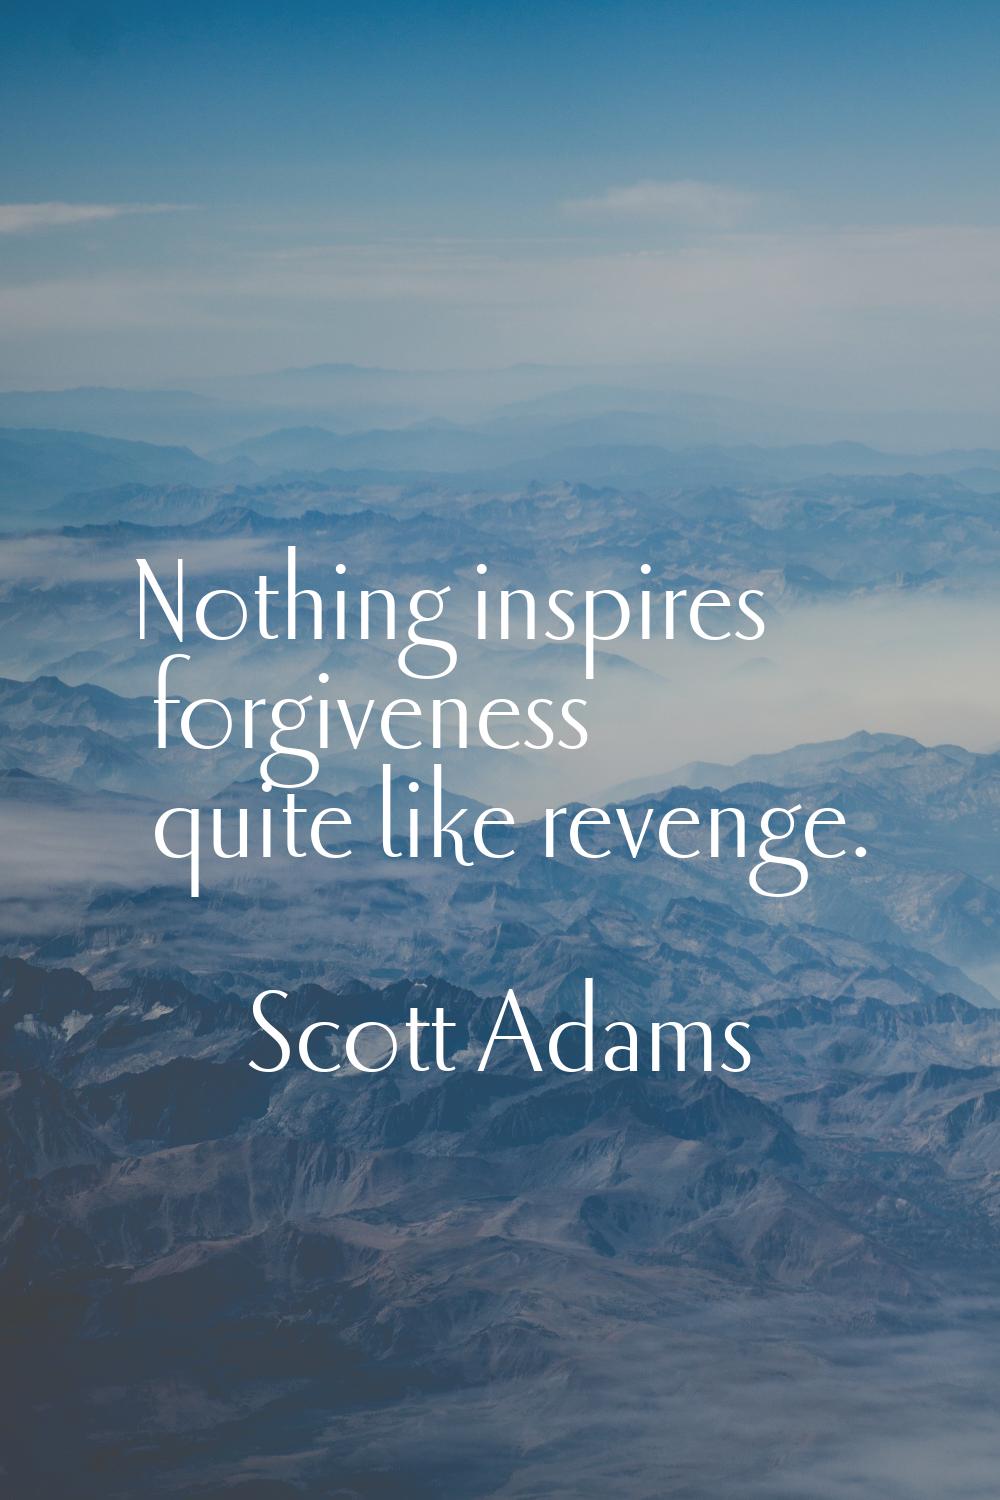 Nothing inspires forgiveness quite like revenge.